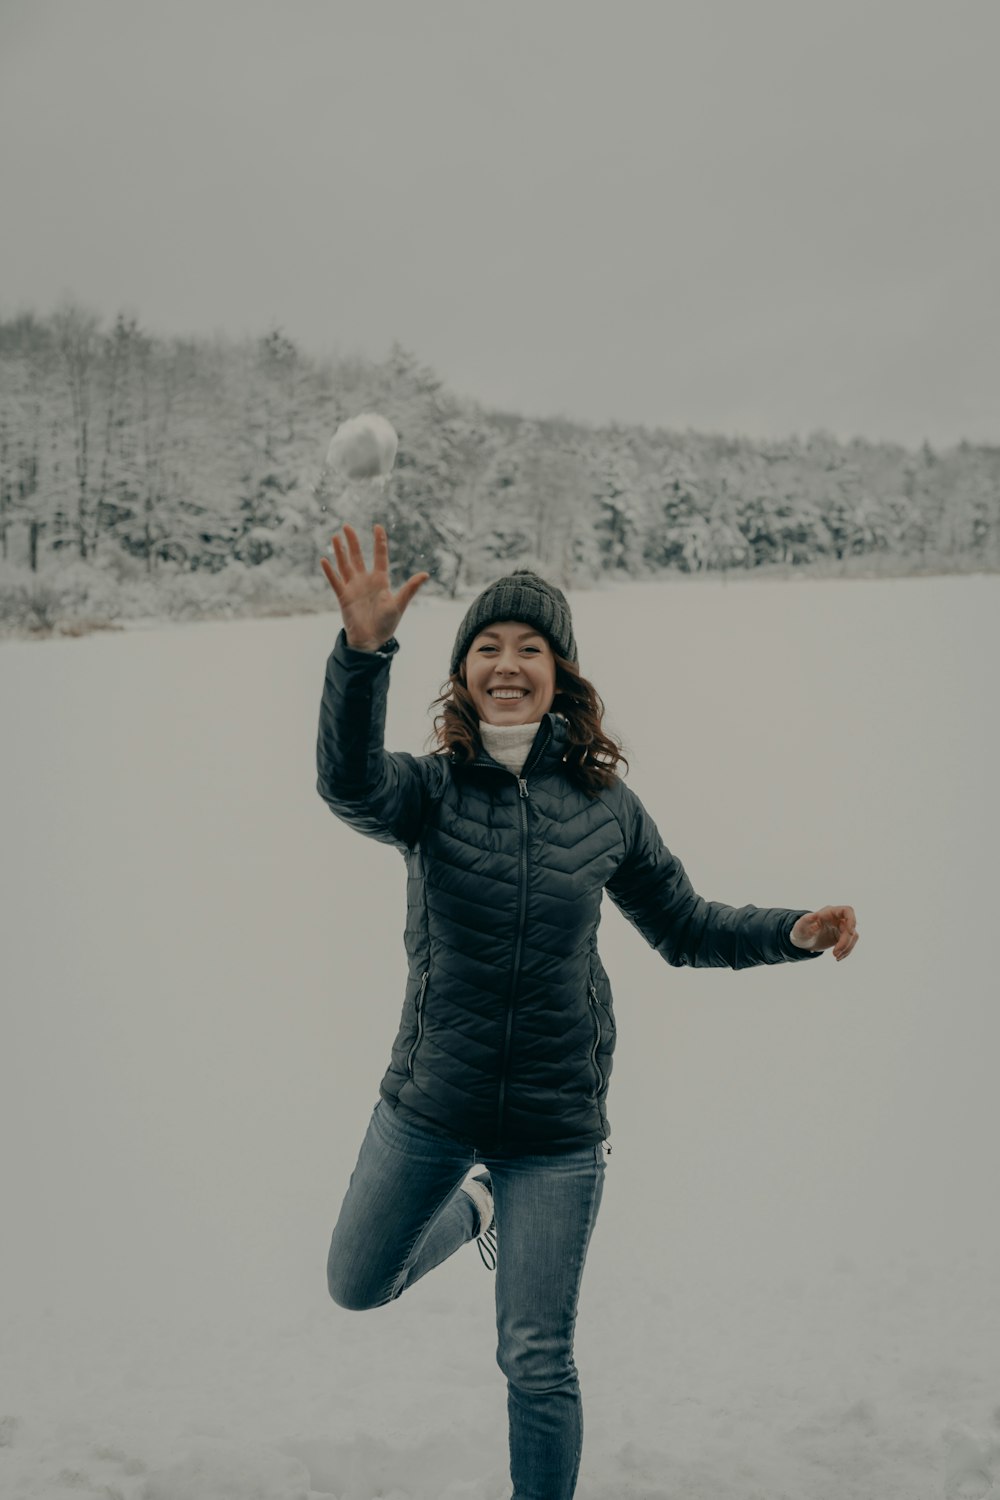 Frau in schwarzer Jacke und blauer Jeans steht tagsüber auf schneebedecktem Boden